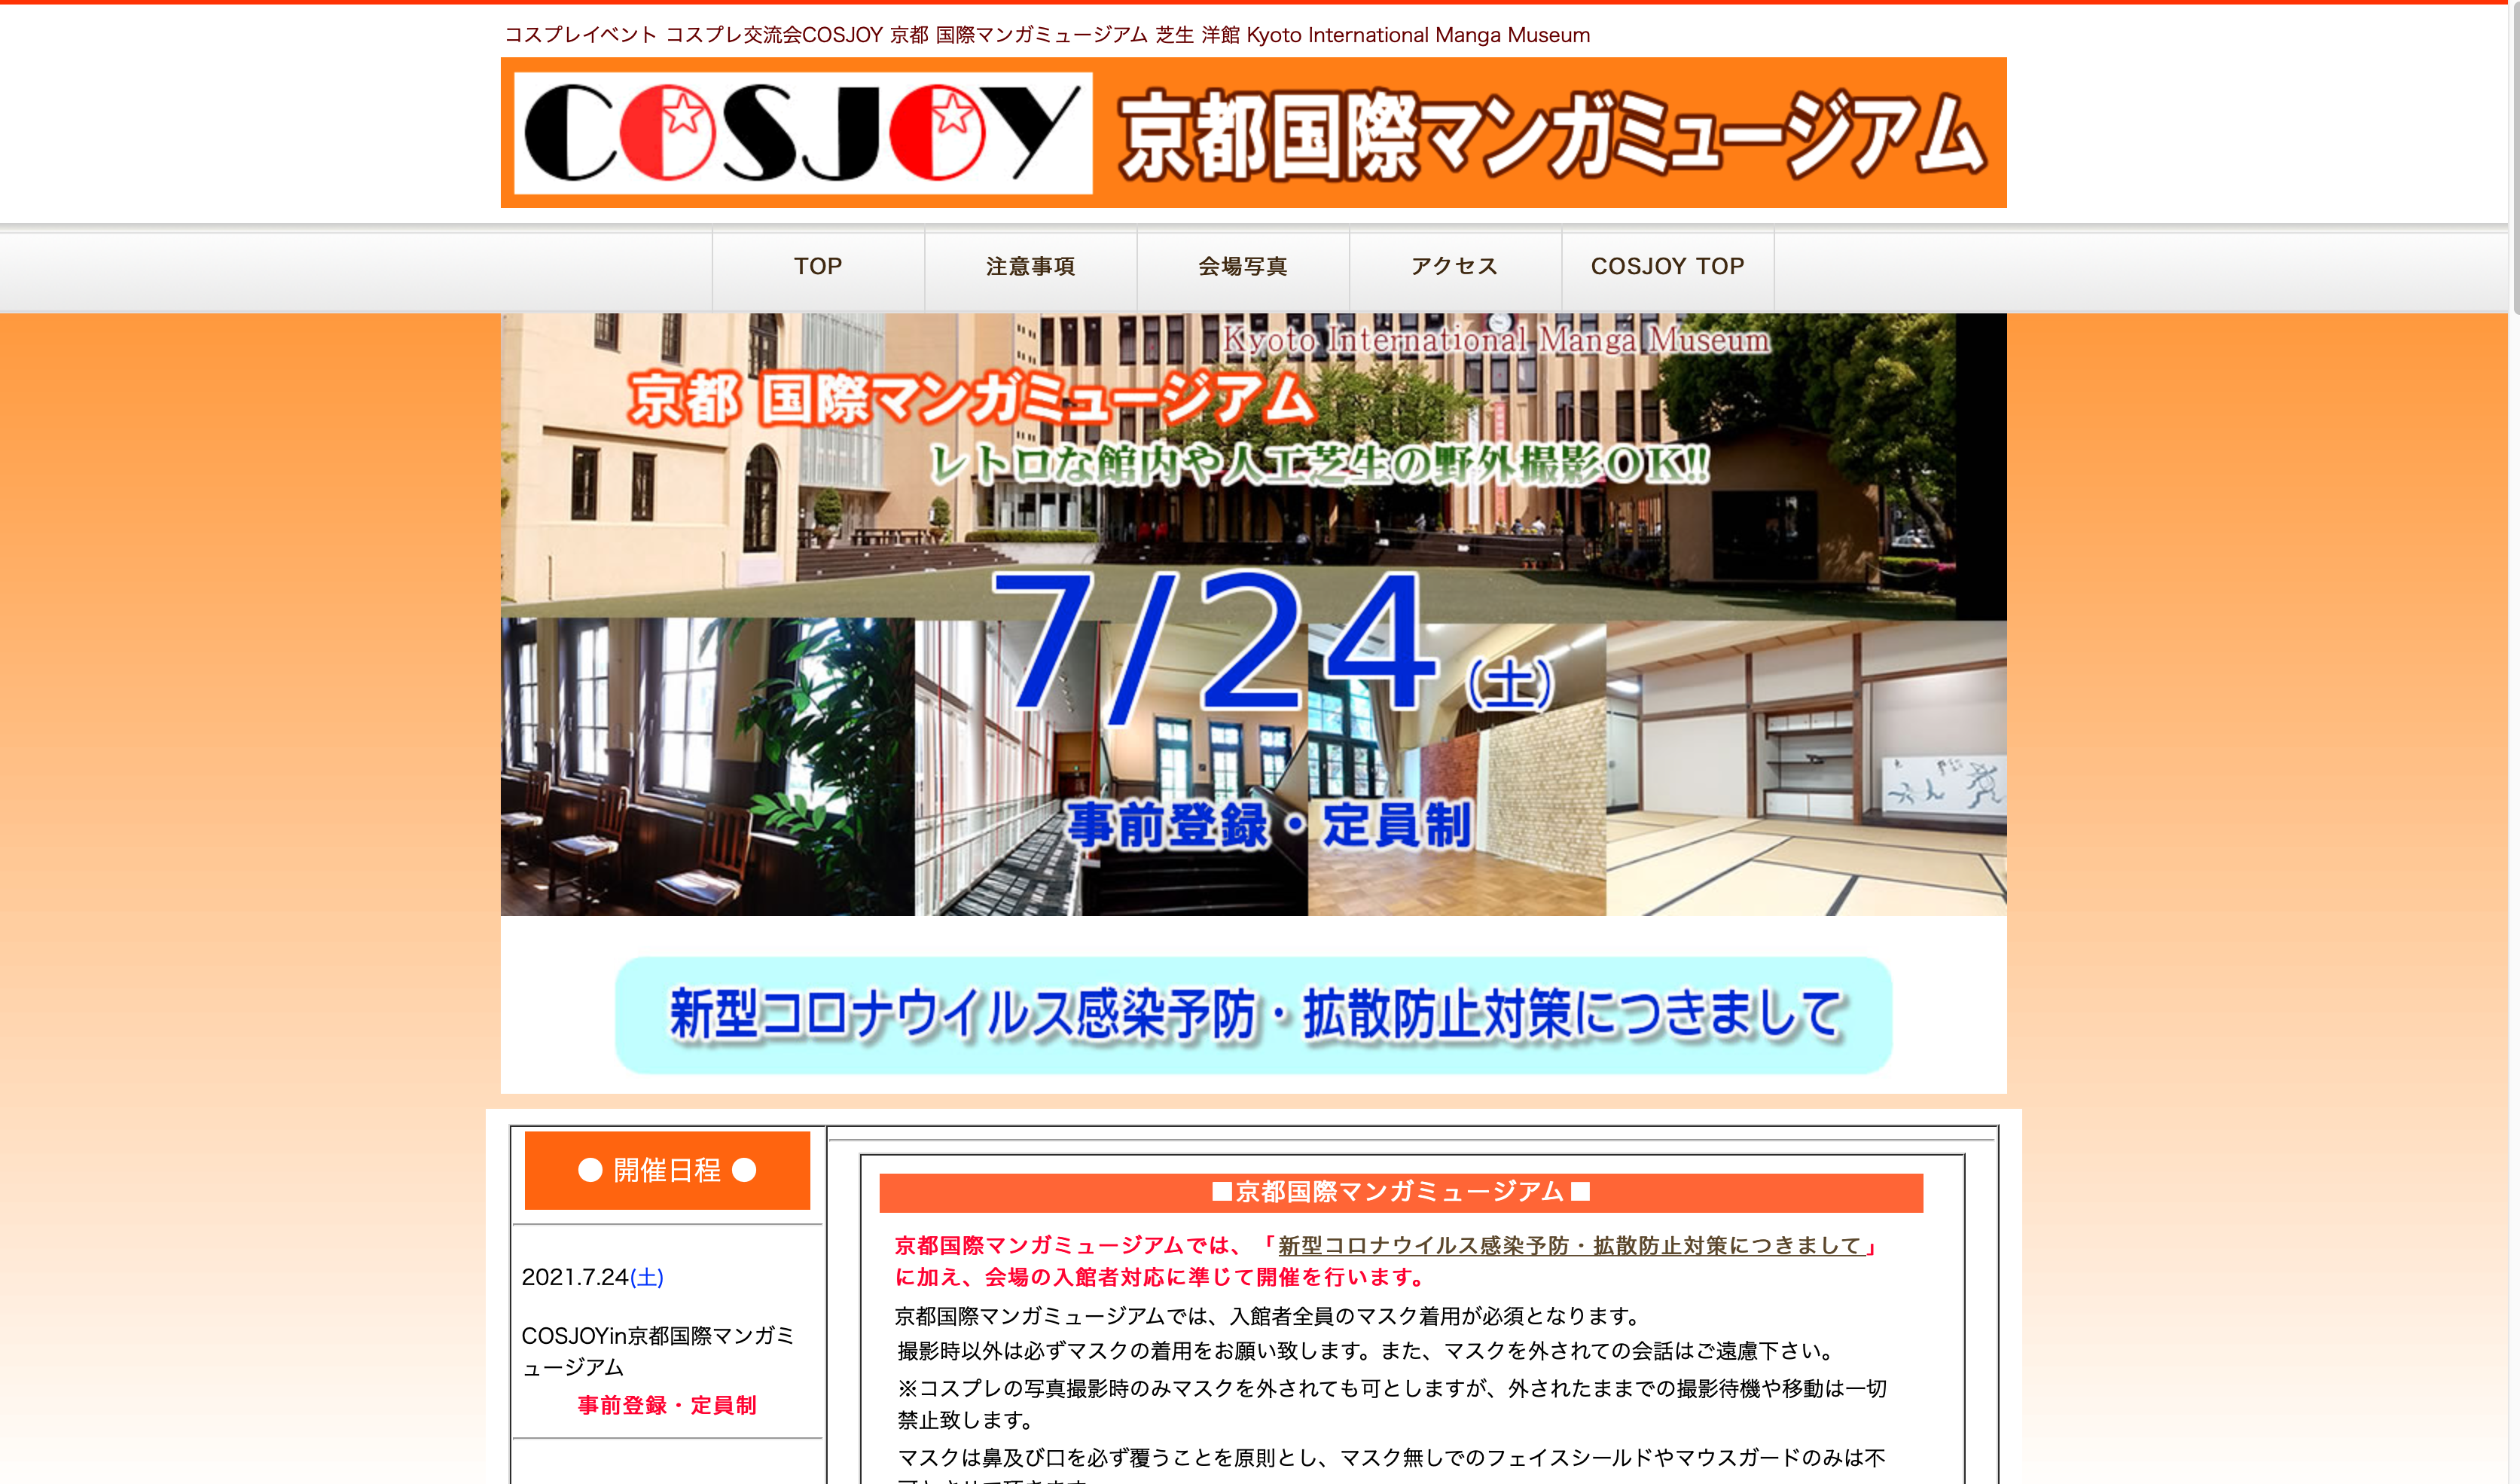 京都コンテンツ関連情報 コスプレイベント コスプレ交流会cosjoy 京都国際マンガミュージアムにて7月24日に開催 Kyoto Cmex 京都 シーメックス ポータルサイト